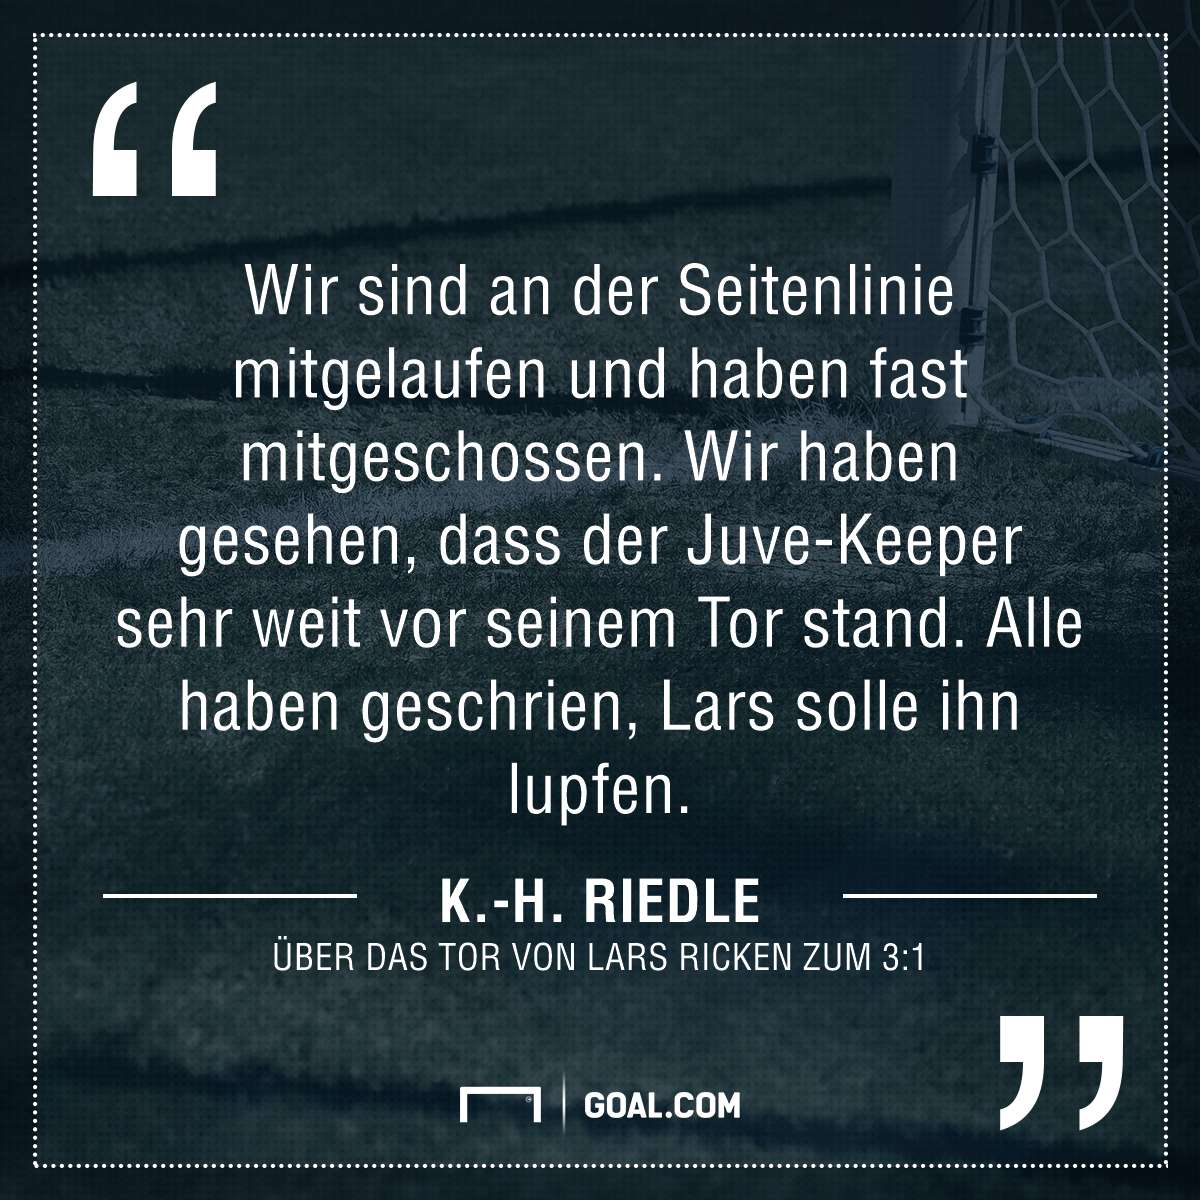 GFX Karl Heinz Riedle Borussia Dortmund